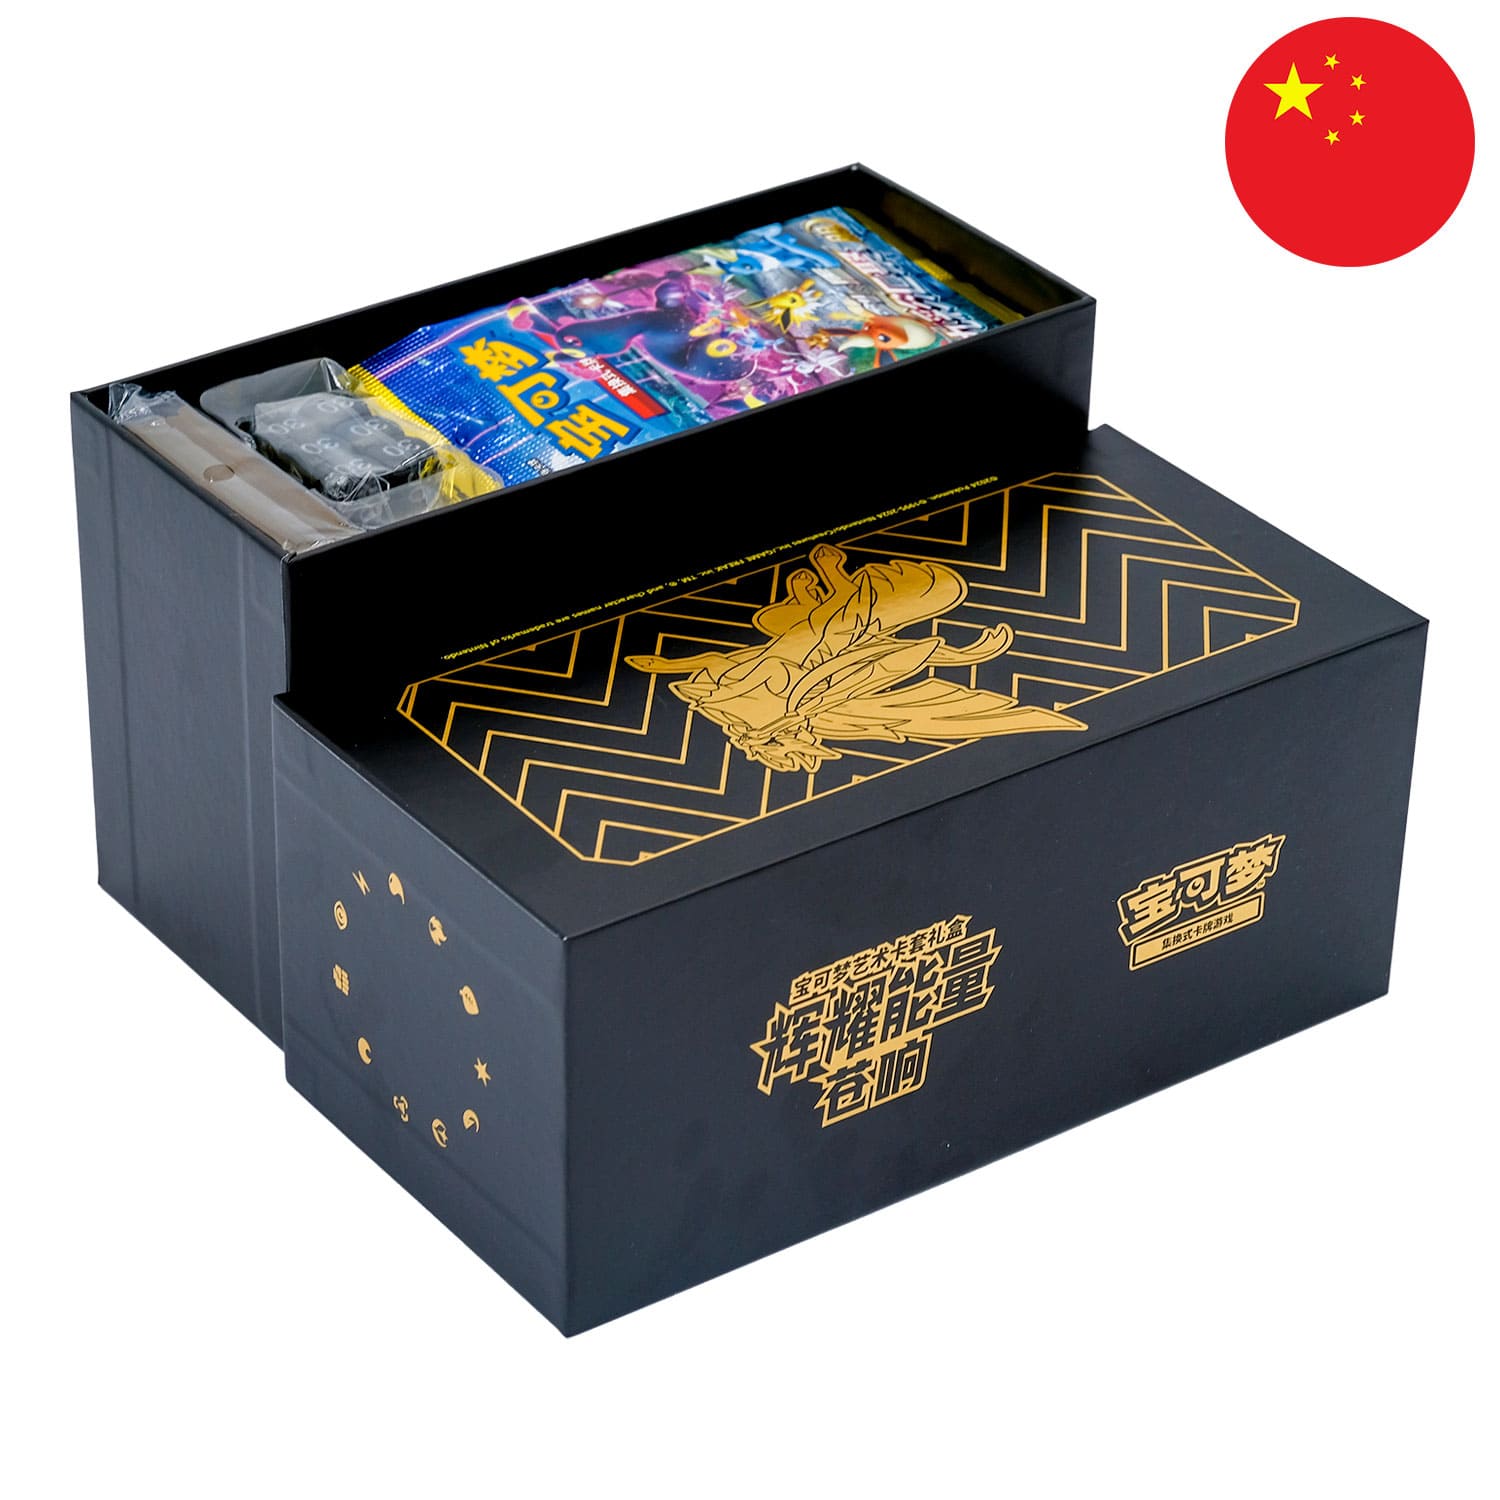 Die Pokemon Radiant Energy Box Zacian (CSK3), geöffnet & den Deckel daneben, mit der Flagge Chinas in der Ecke.